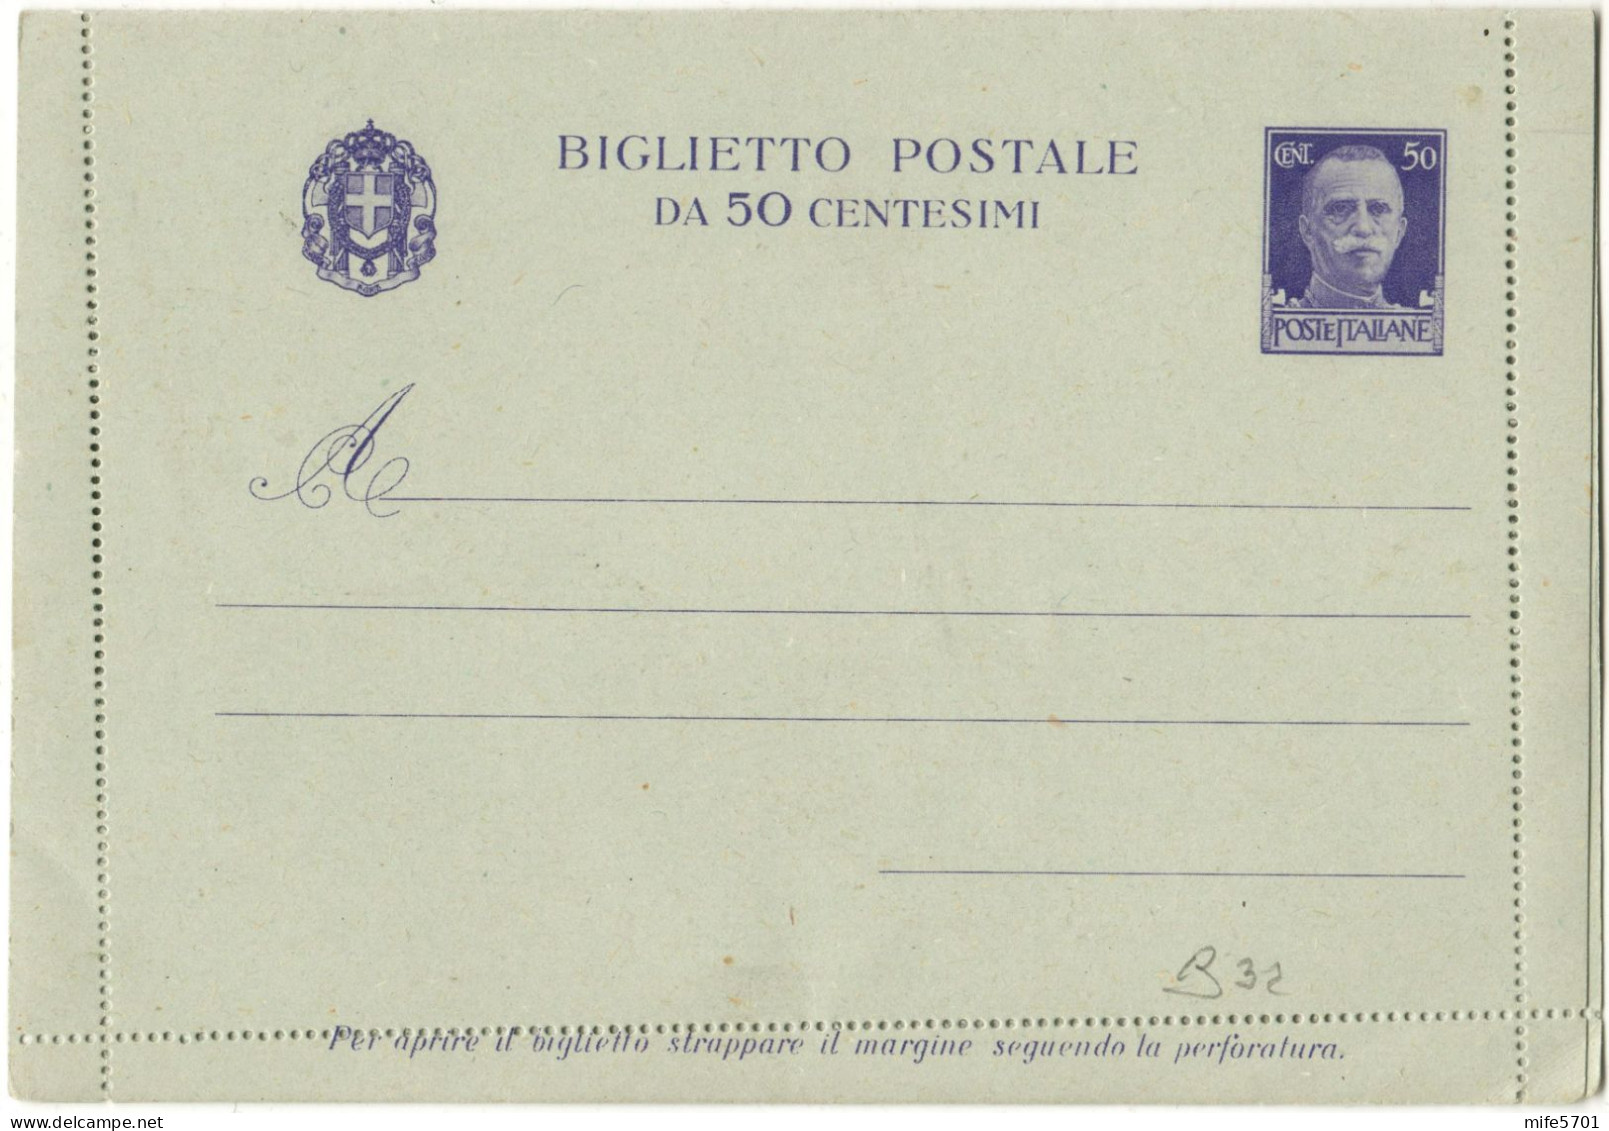 REGNO D'ITALIA B31/B32 - 1935 DUE BIGLIETTI POSTALI SERIE 'IMPERIALE' DA c. 25 E c. 50 FORMATO GRANDE - NUOVI FILAGRANO